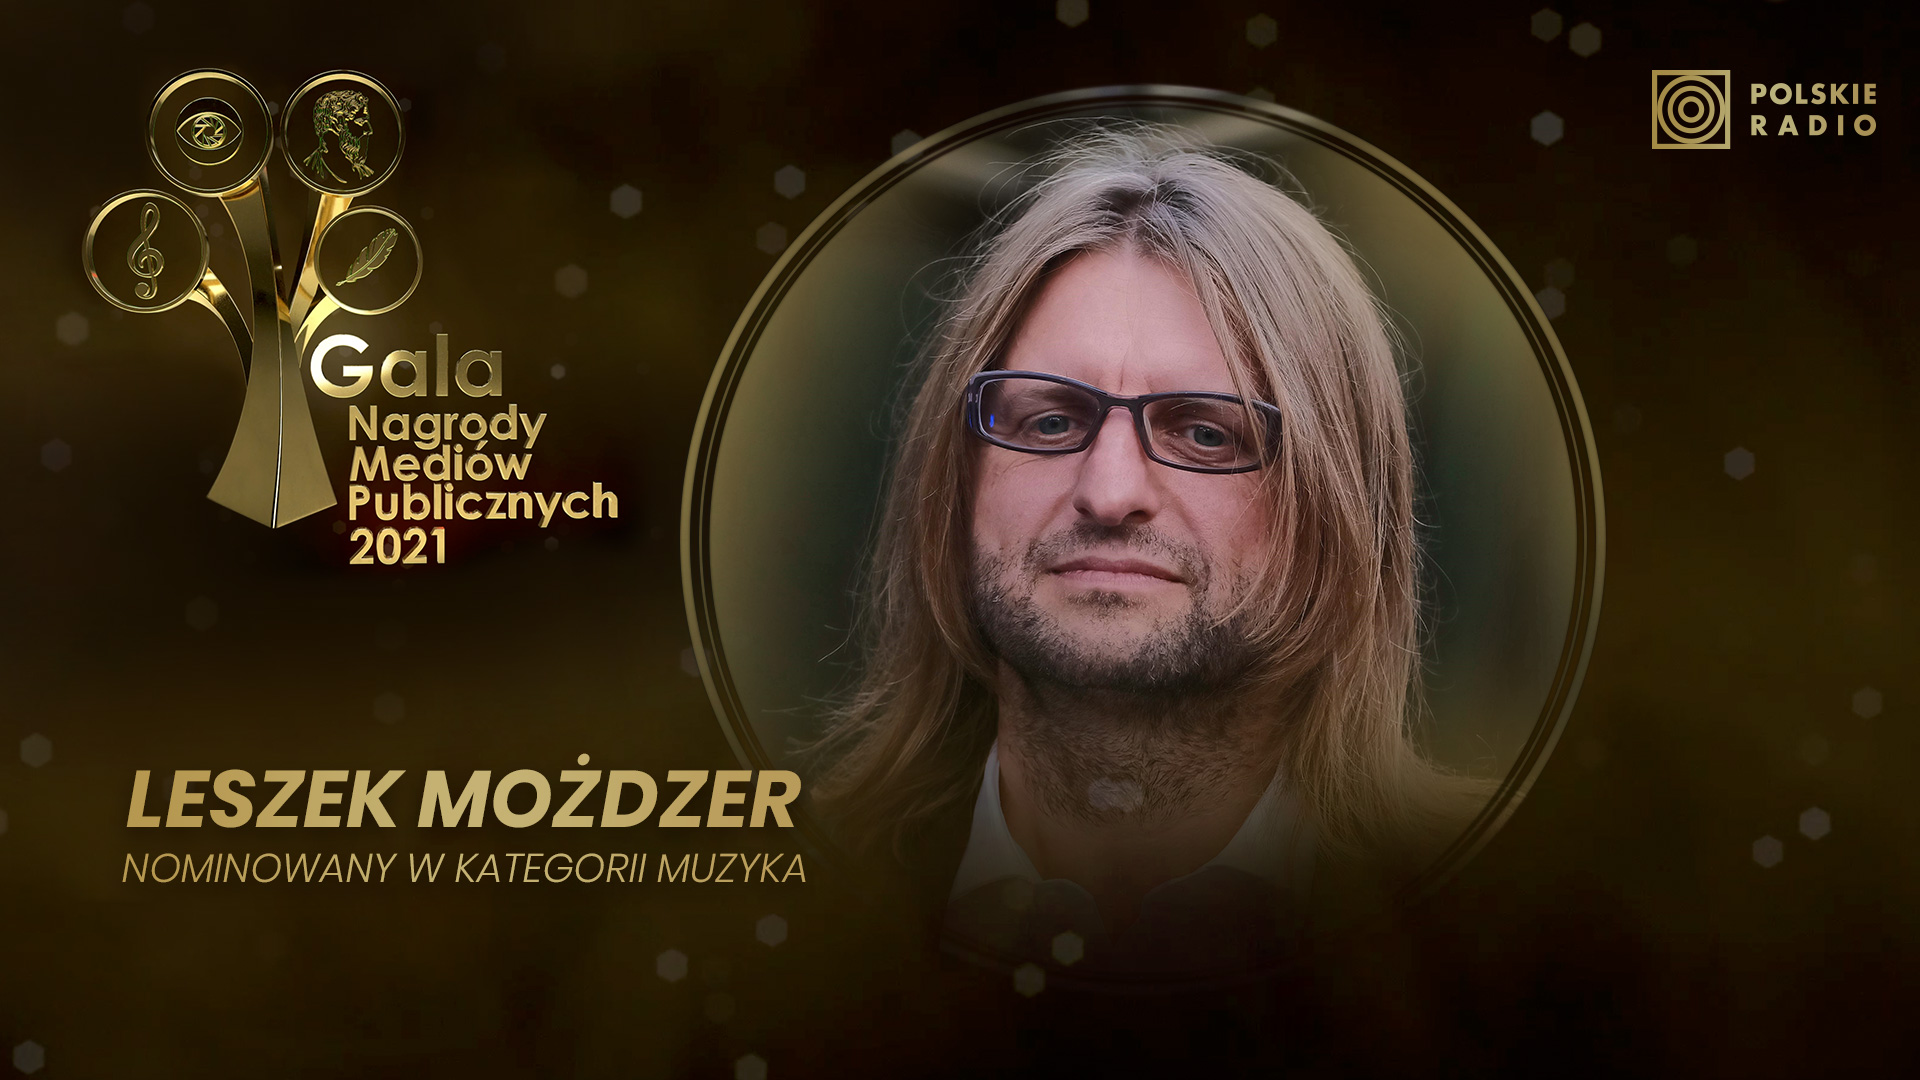 Leszek Możdżer - nominowany do Nagrody Mediów Publicznych 2021 w kategorii Muzyka. 